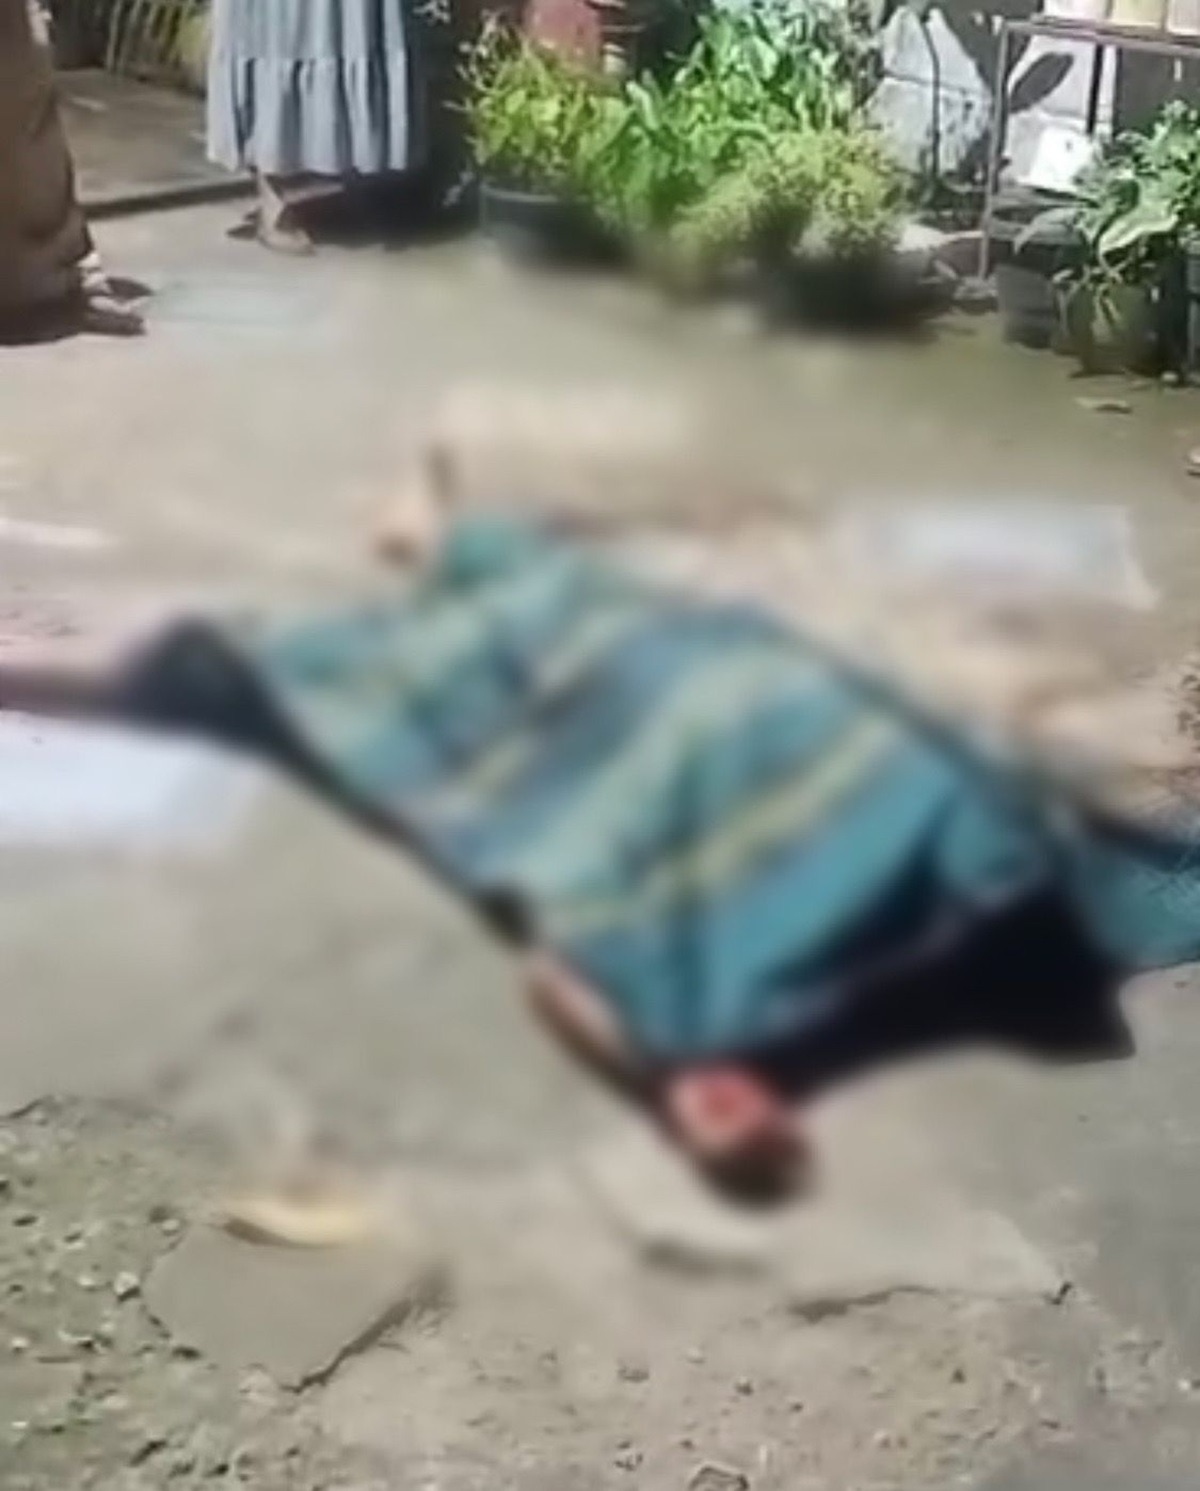 BREAKING NEWS: Pembunuhan Terjadi di Depan Hotel Makmur Kota Jambi